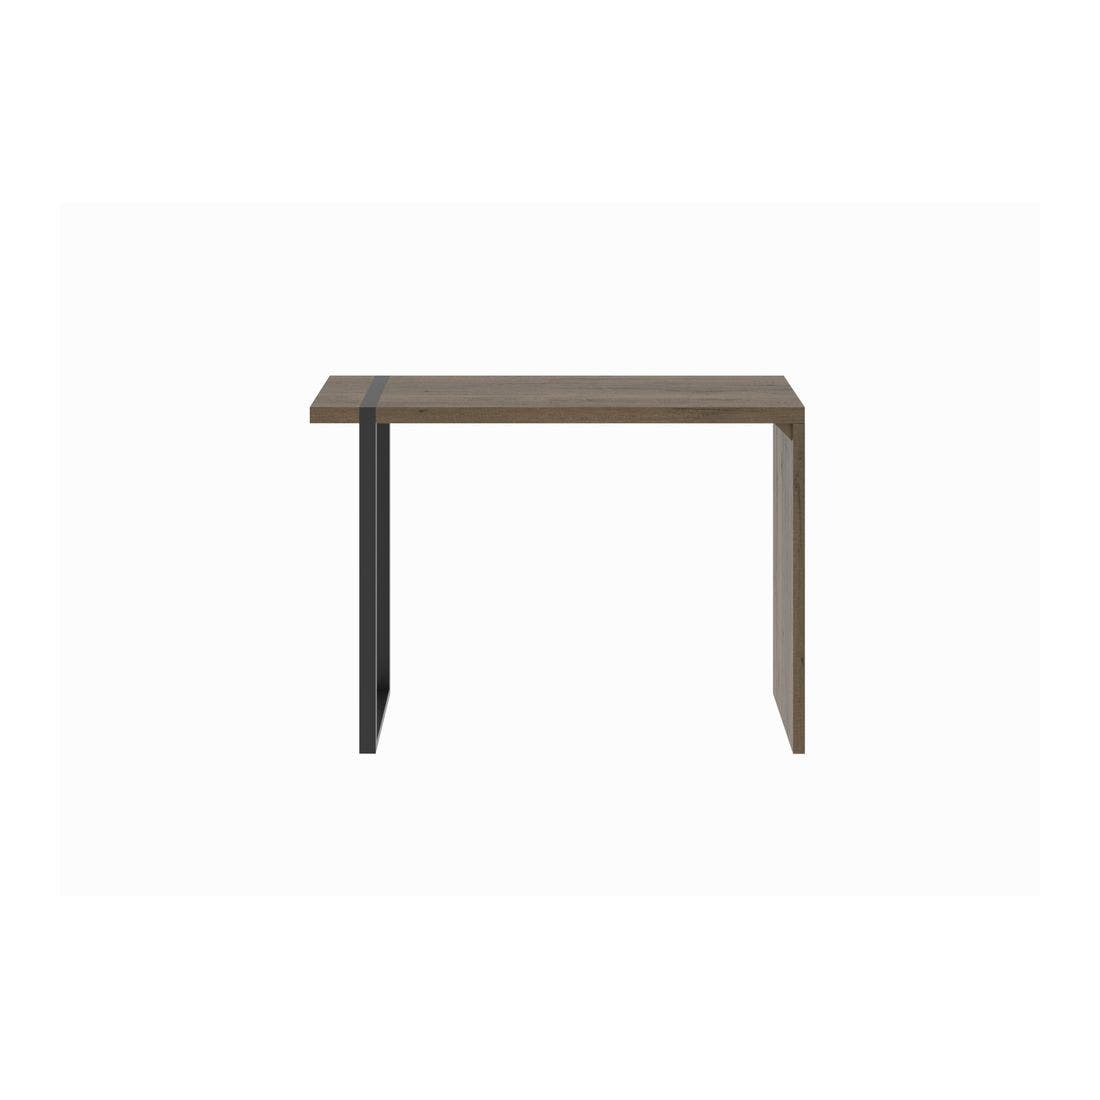 โต๊ะทานอาหาร โต๊ะบาร์ขาเหล็กท๊อปไม้ รุ่น Trailor สีสีเข้มลายไม้ธรรมชาติ-SB Design Square